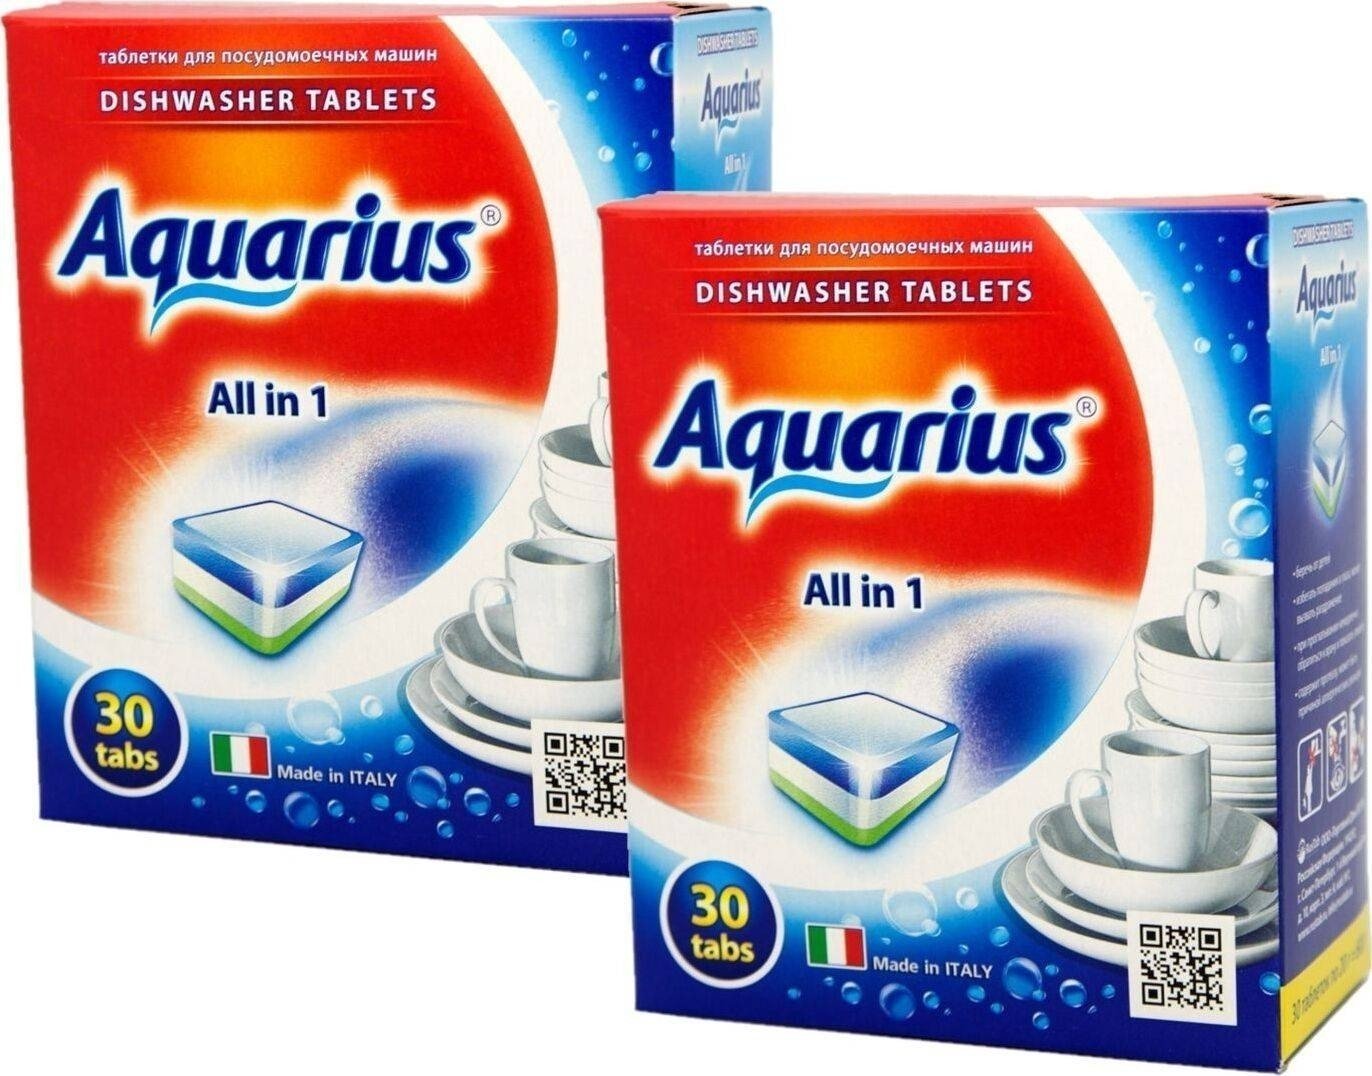 Aquarius таблетки для посудомоечной машины